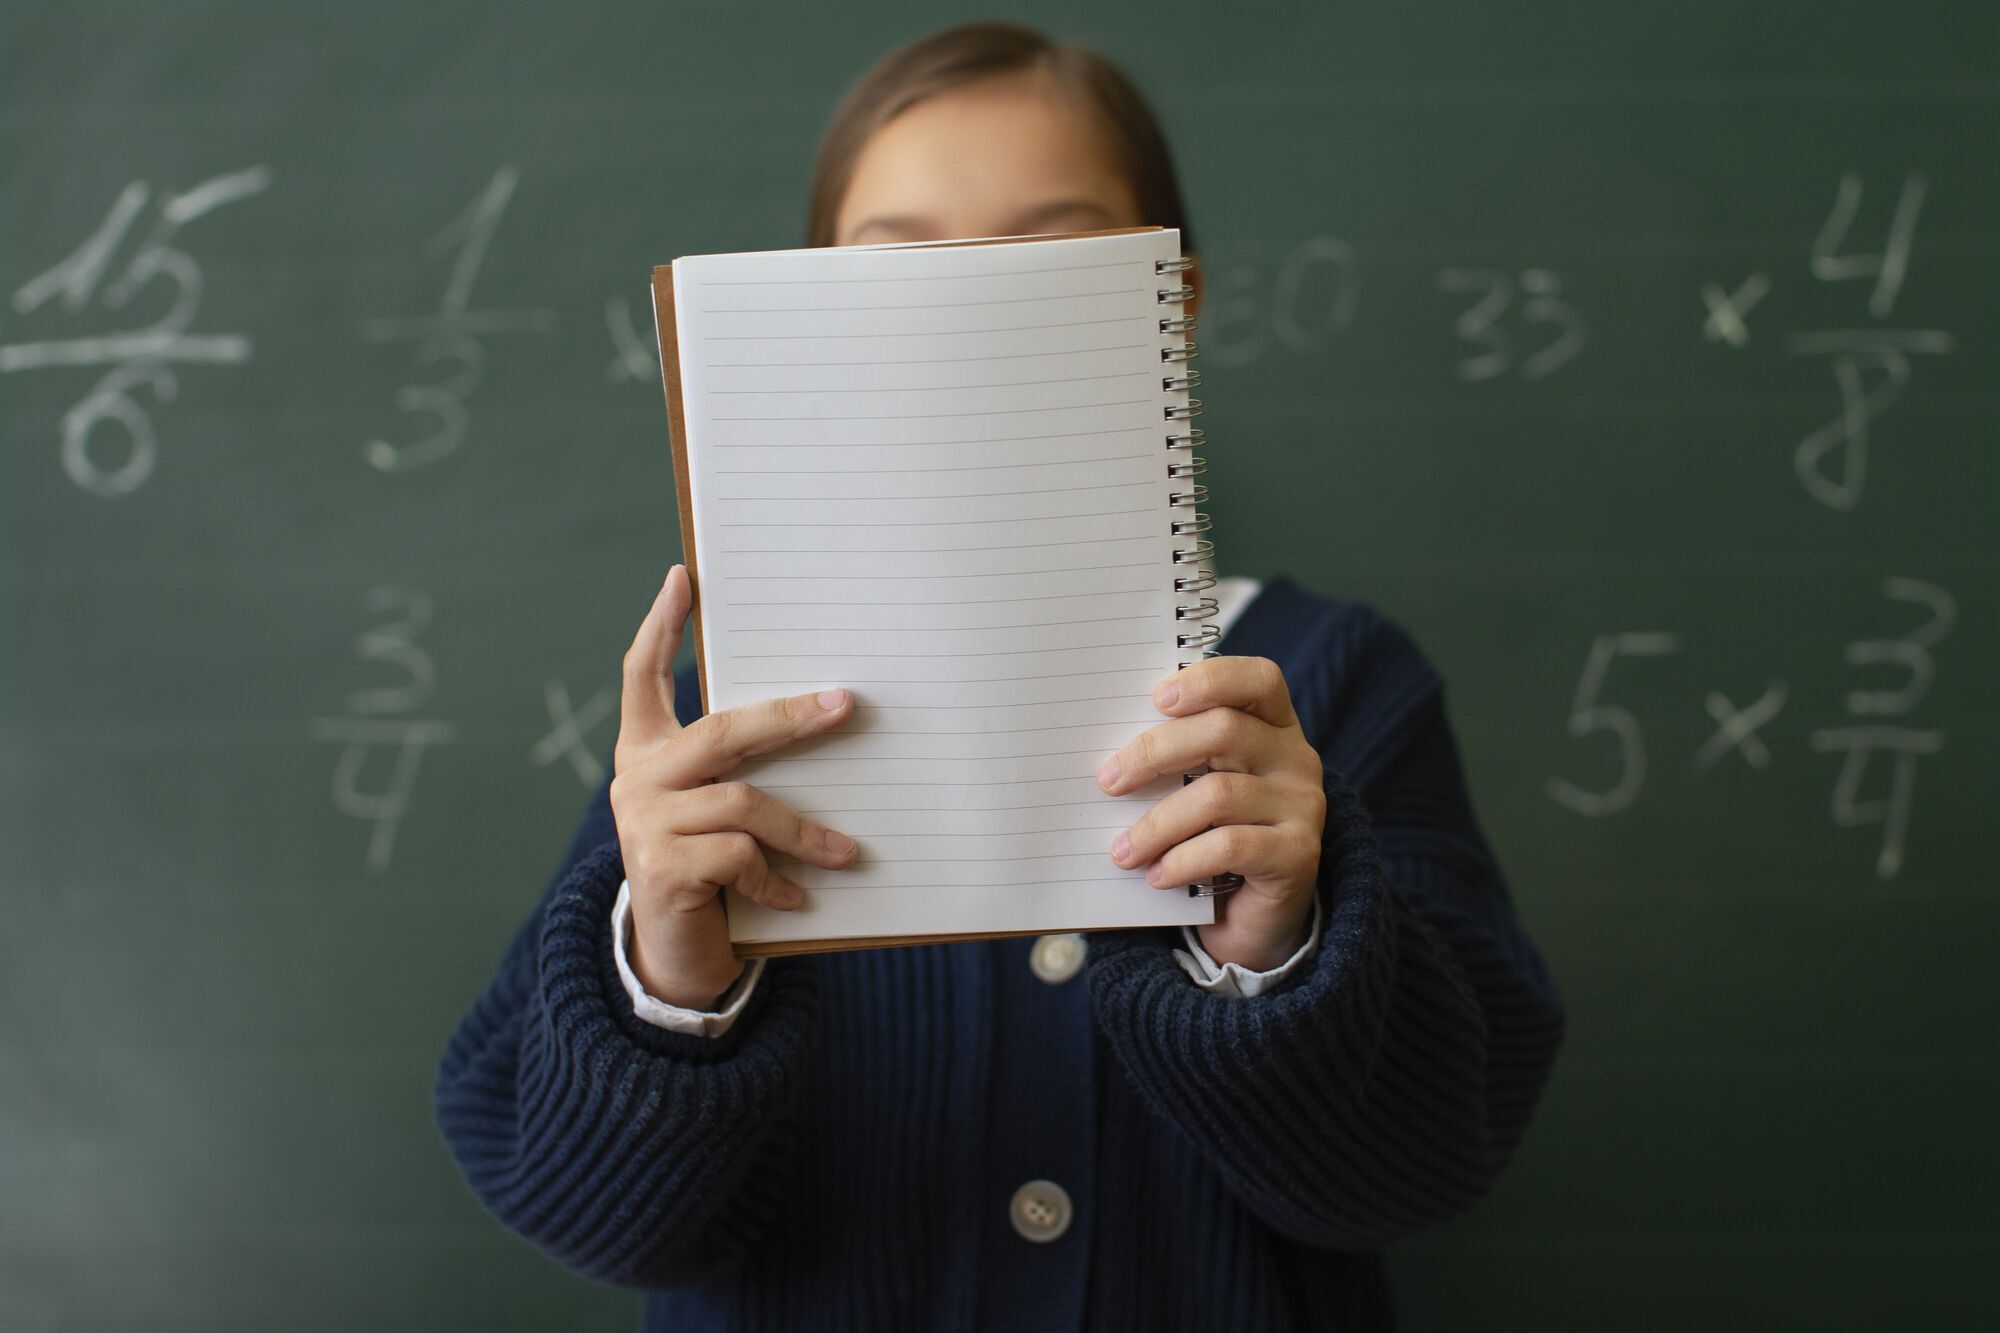 Что должен знать ребенок по математике после окончания 4 класса